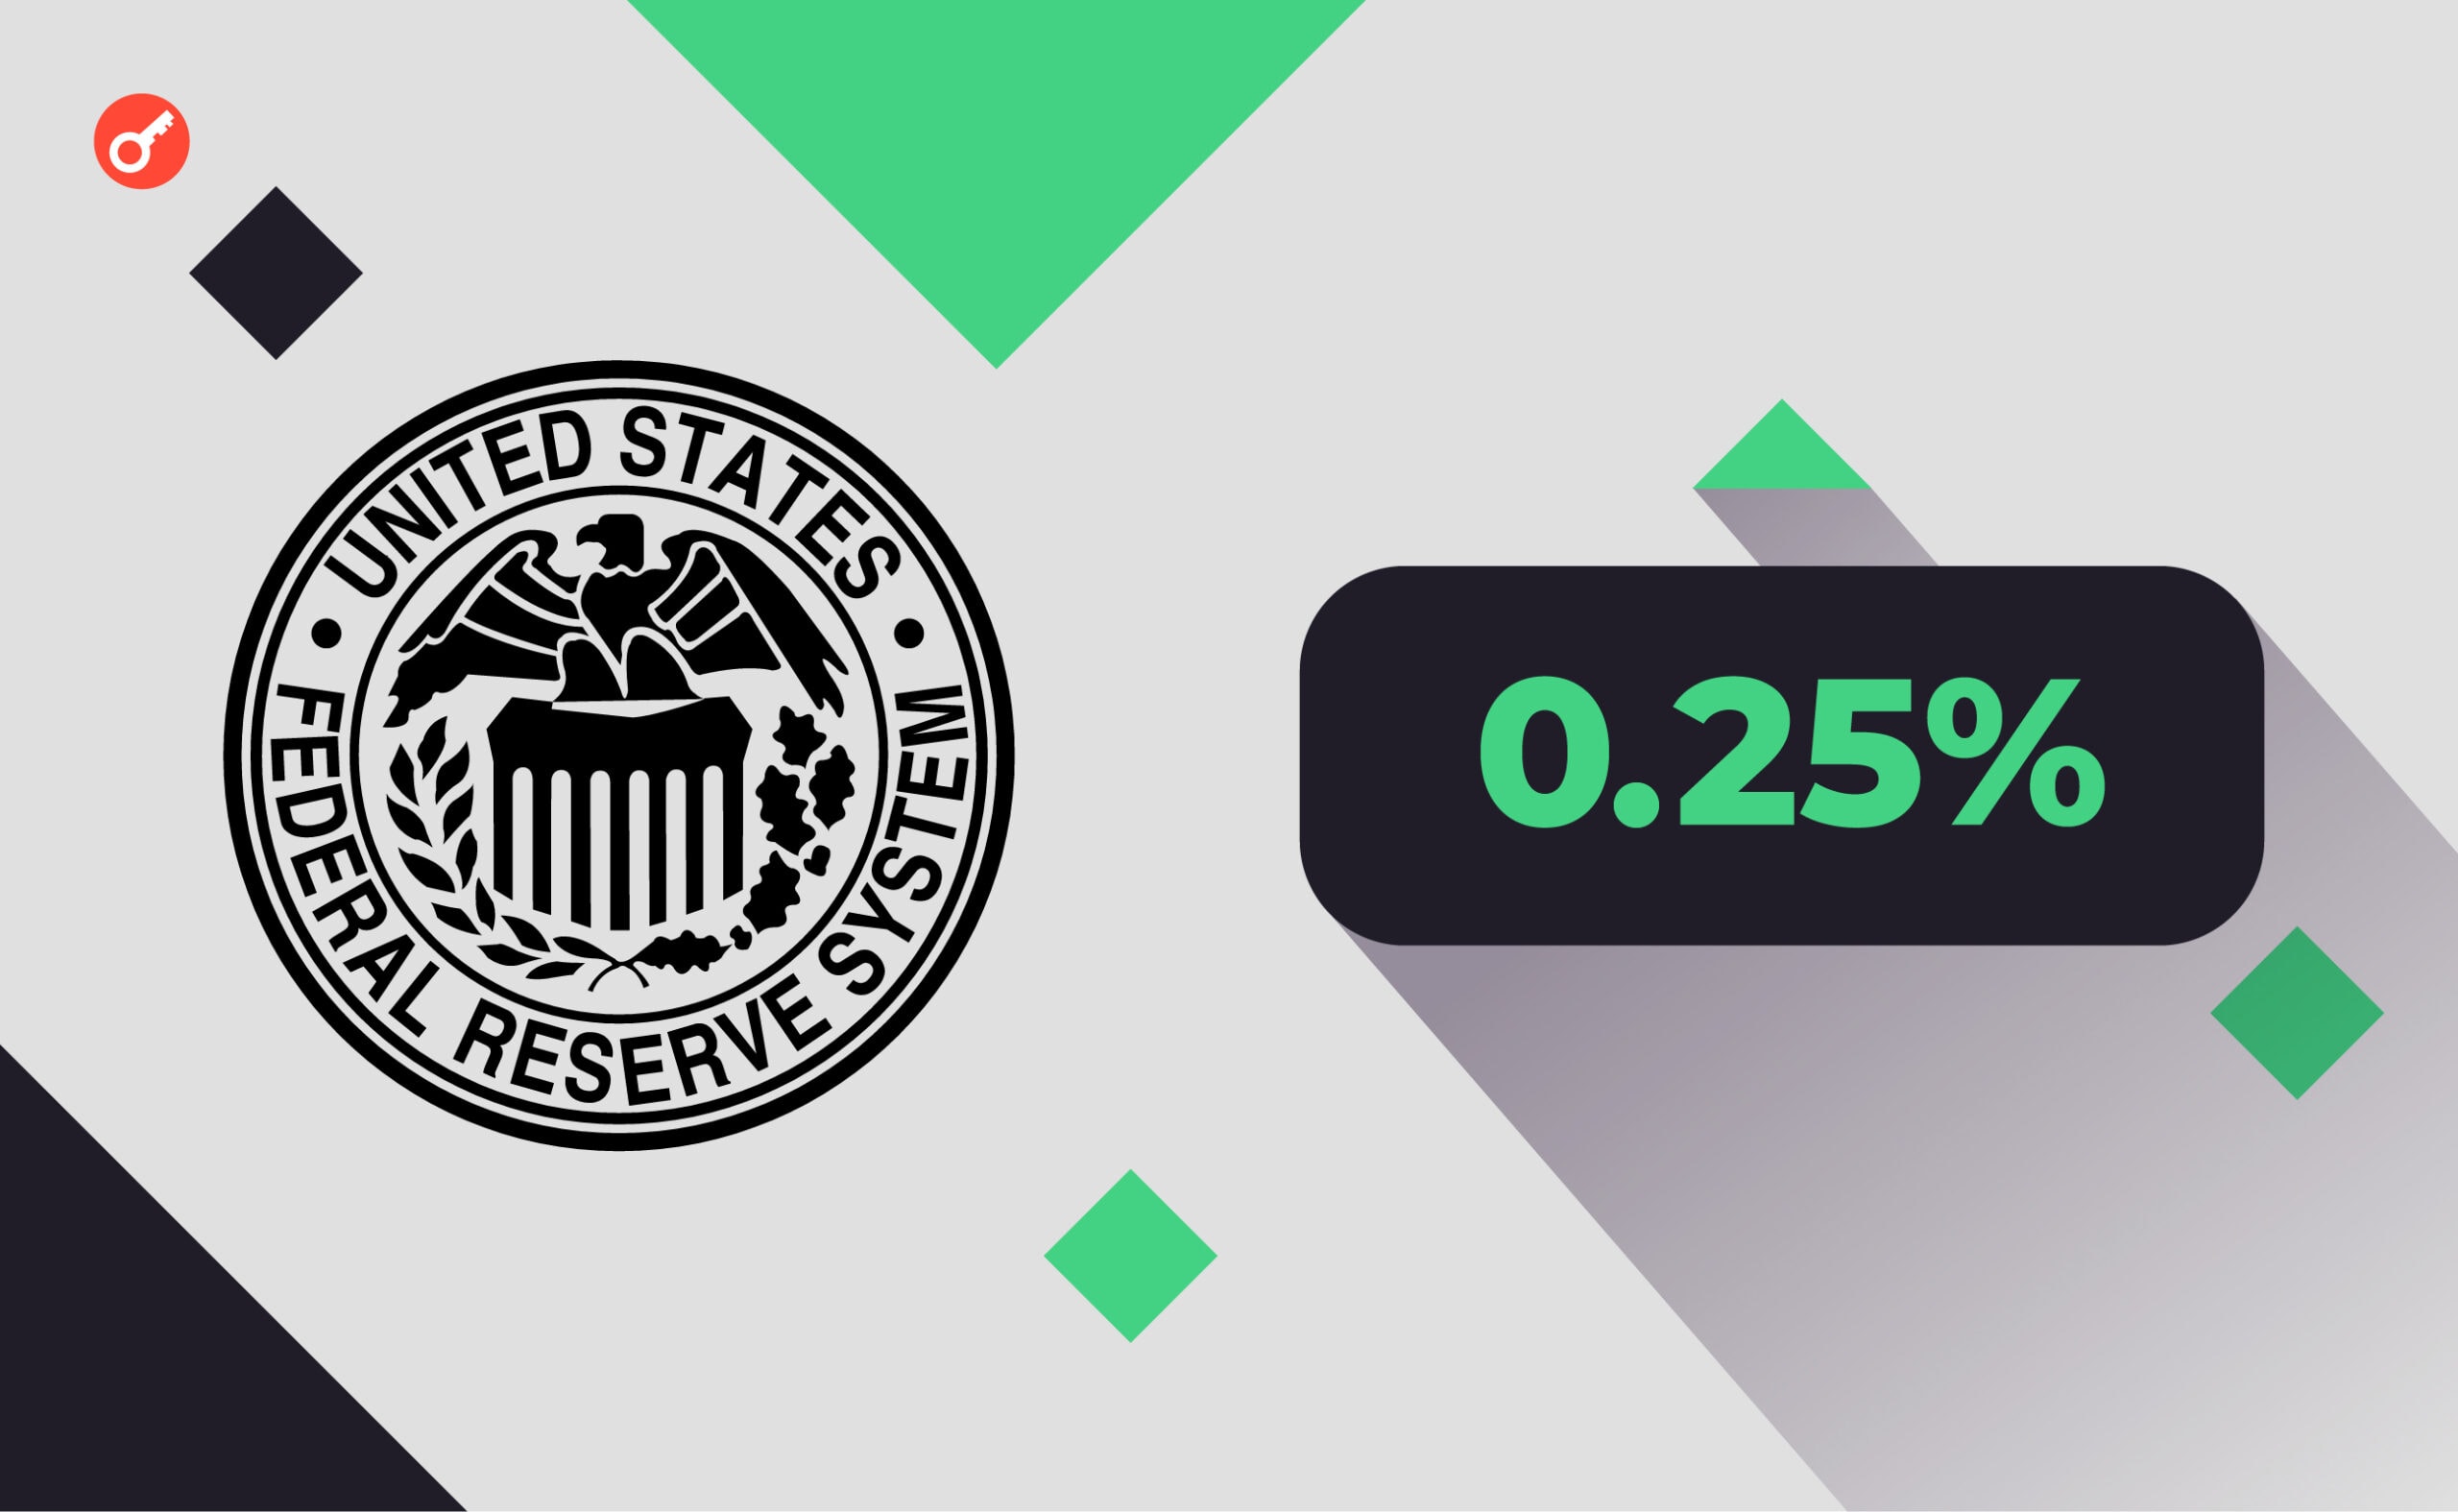 ФРС підвищила процентну ставку в 11-й раз. Біткоїн зберіг позиції. Головний колаж новини.